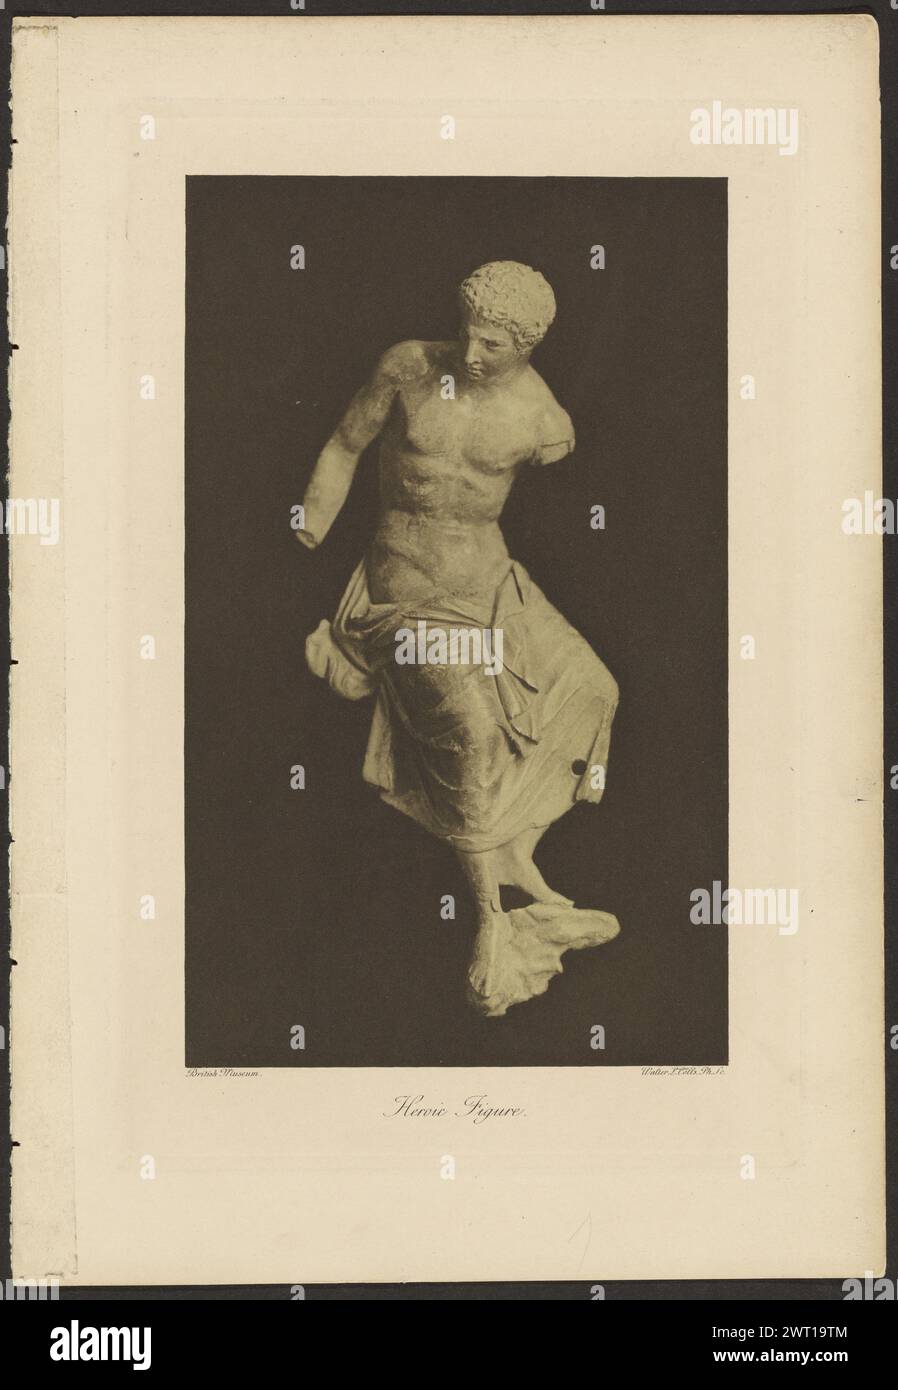 Heldenhafte Figur. Walter L. Colls, Fotograf (britischer Fotograf, aktive 1890er 1890 Jahre) über klassisch griechische oder römische Skulptur eines Mannes mit einem Tuch um die Beine gewickelt. Stockfoto